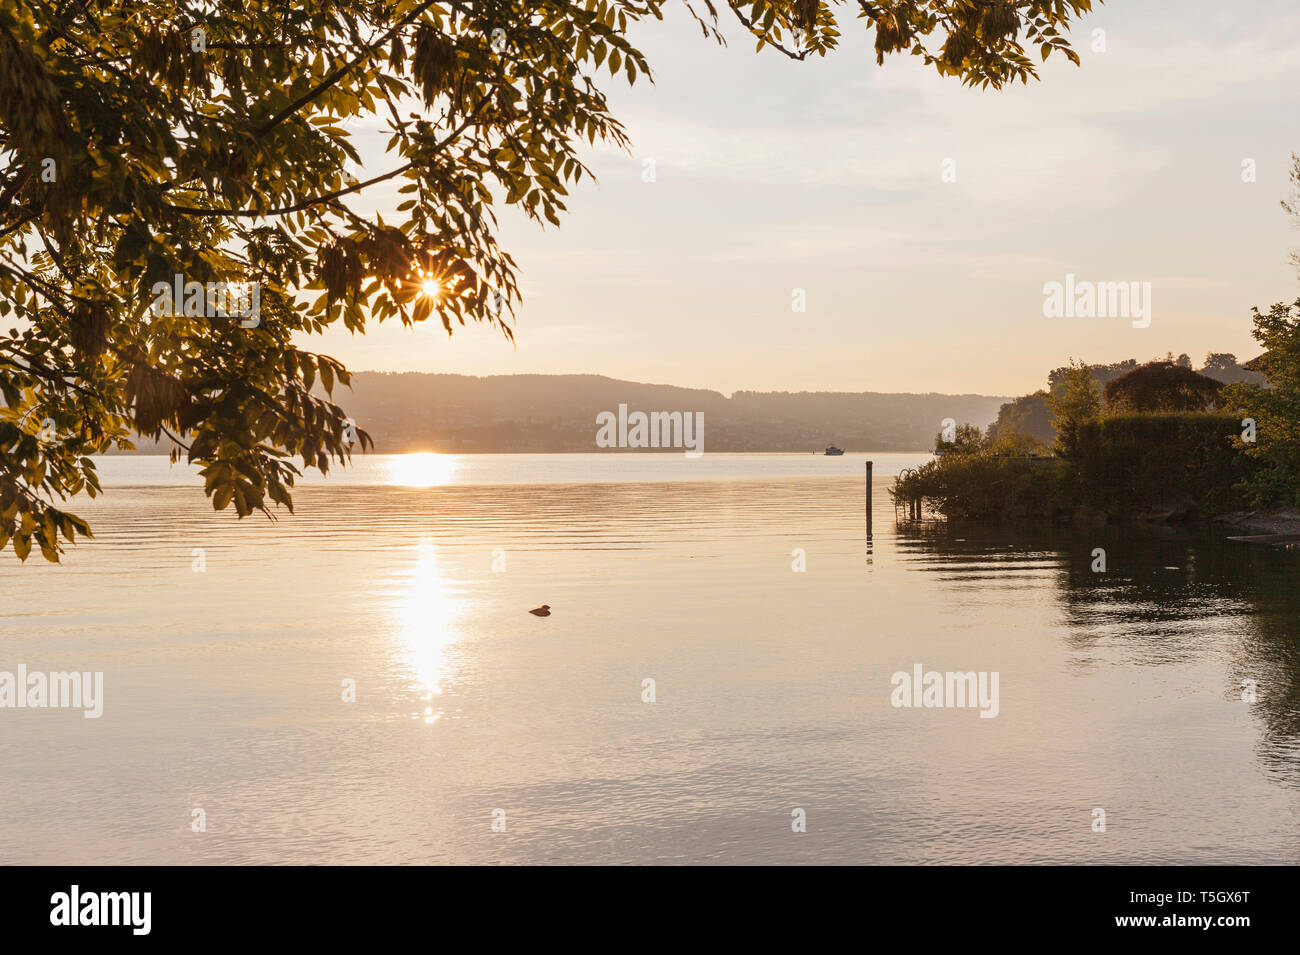 Switzerland, Canton Zurich, Richterswil, Lake Zurich at sunrise Stock Photo